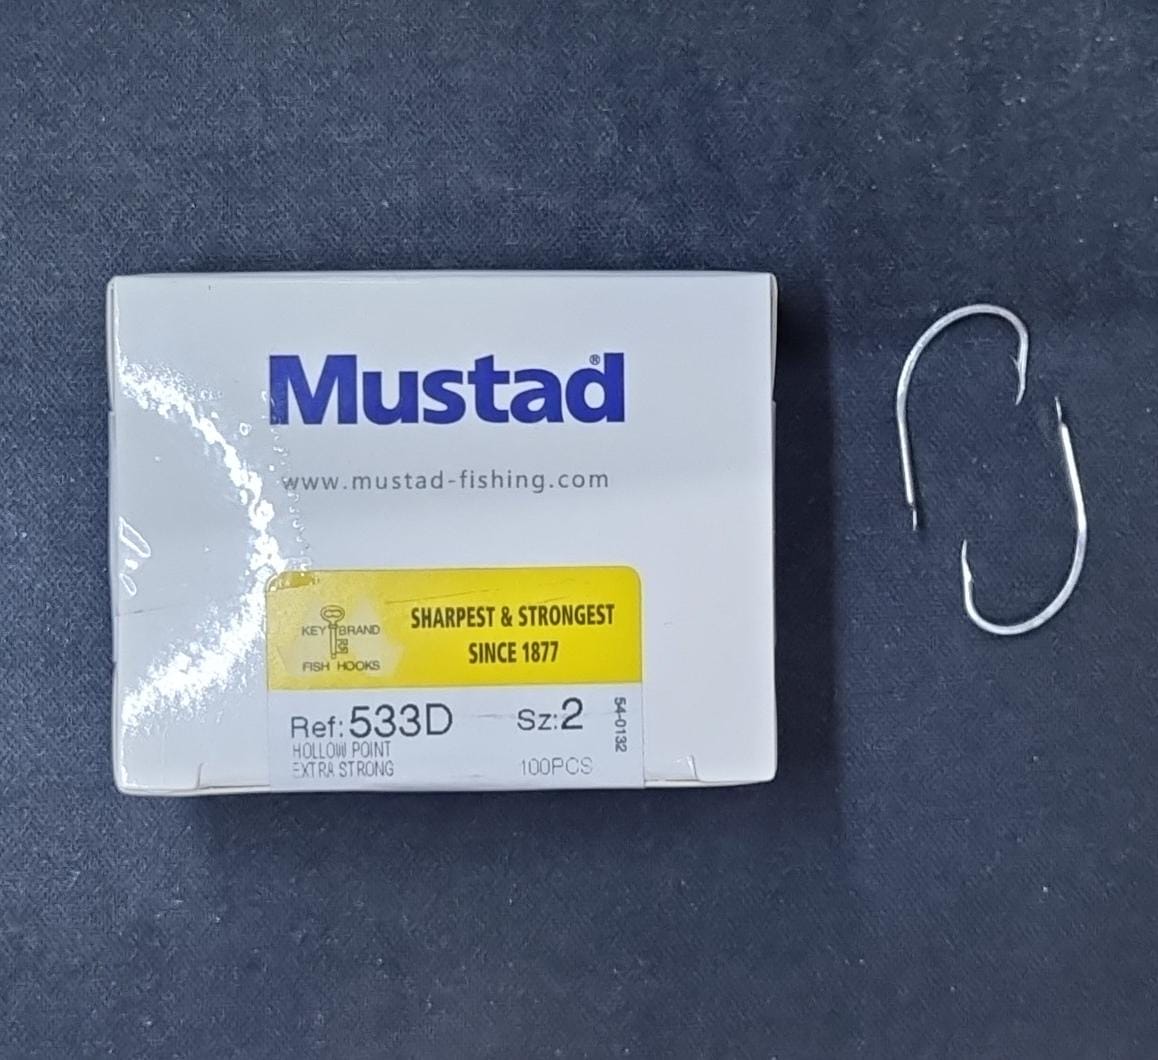 MUSTAD-REF.-533D.jpg